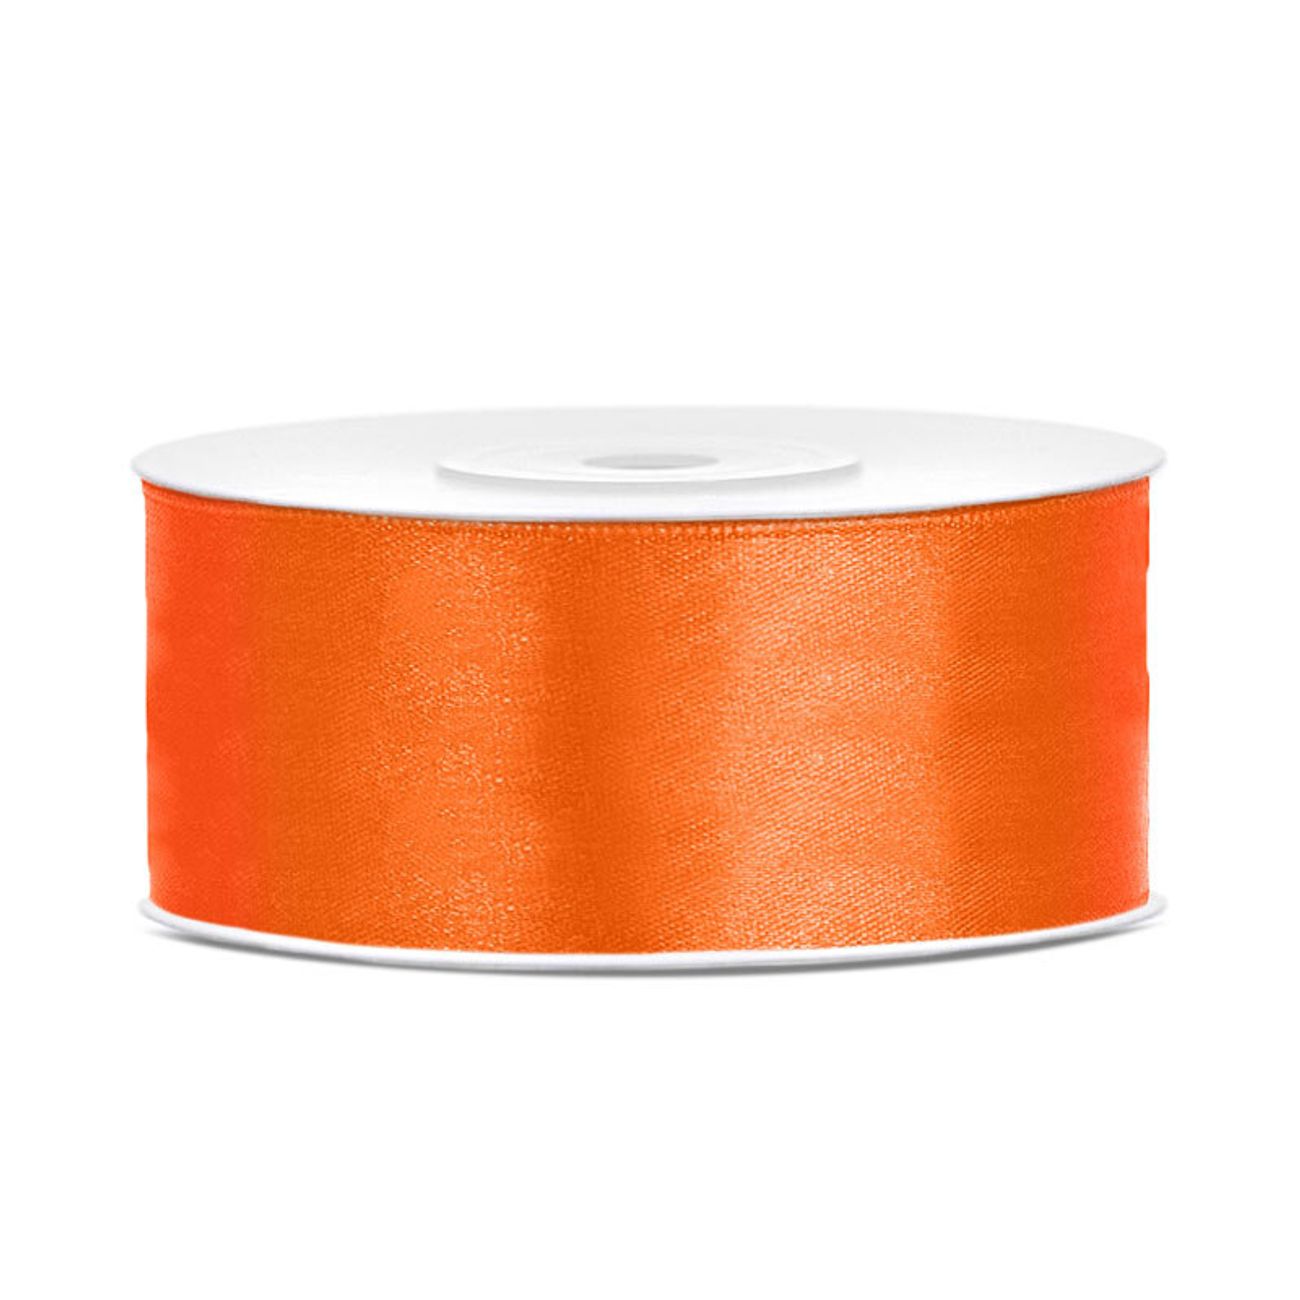 satinband-orange-44707-7